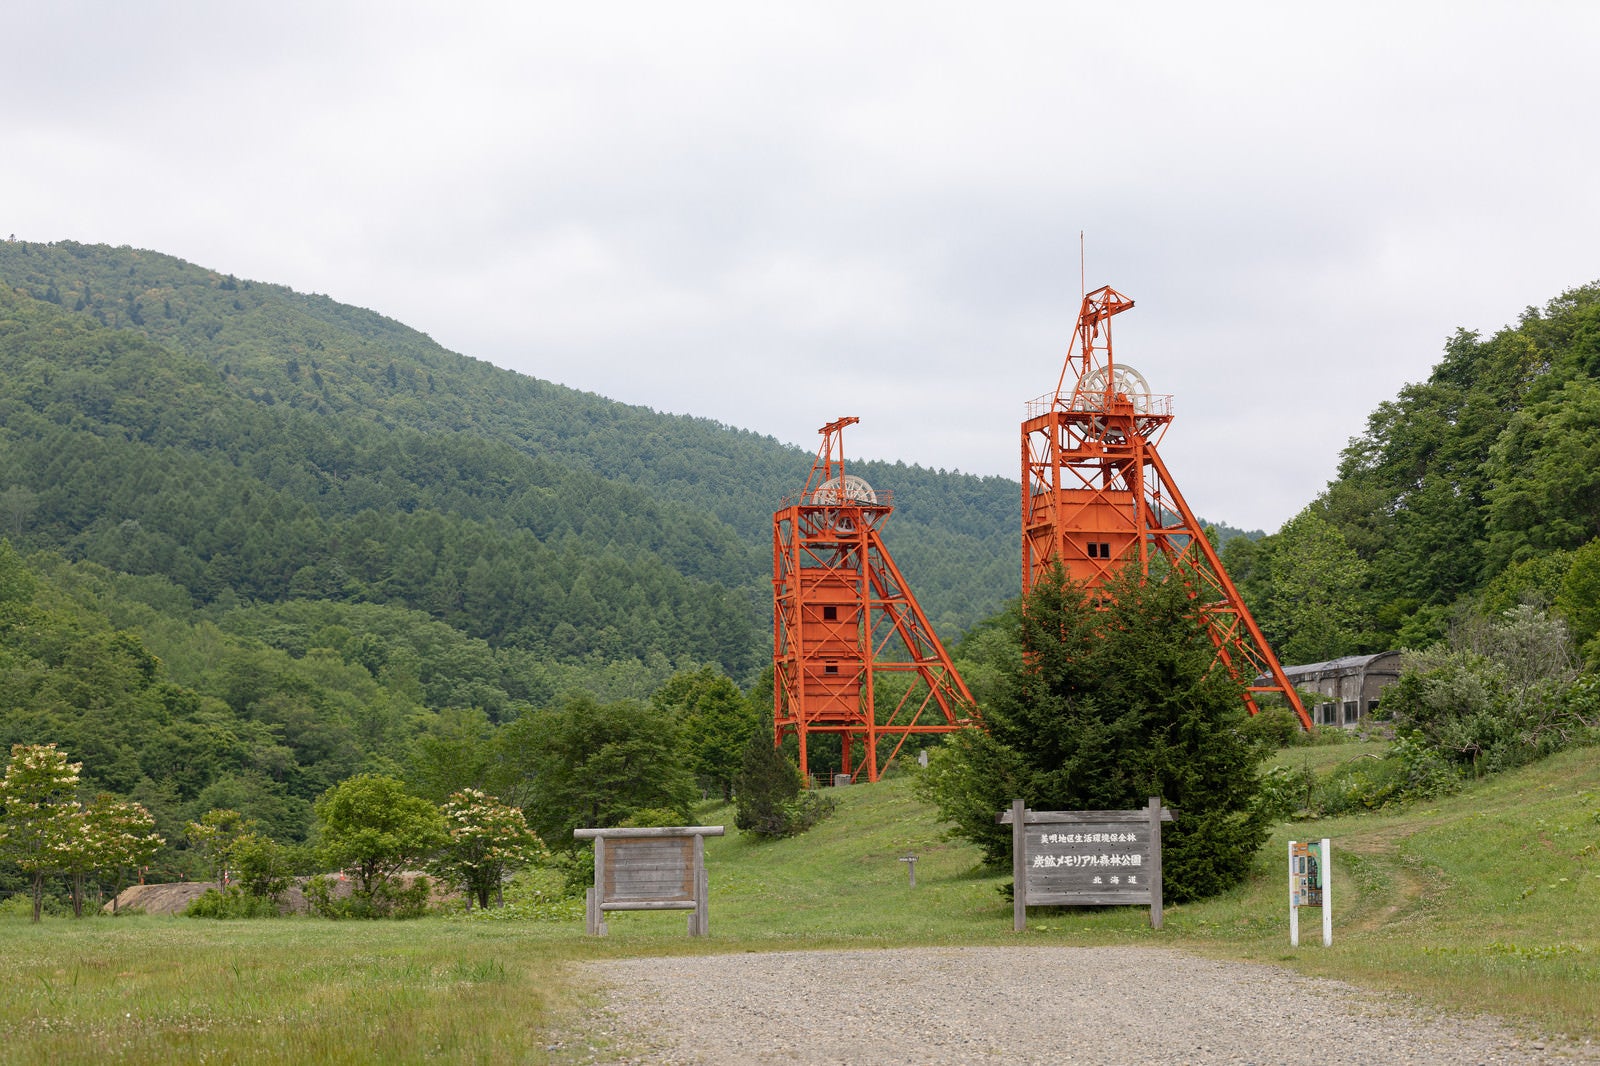 「炭鉱メモリアル森林公園と立坑櫓」の写真